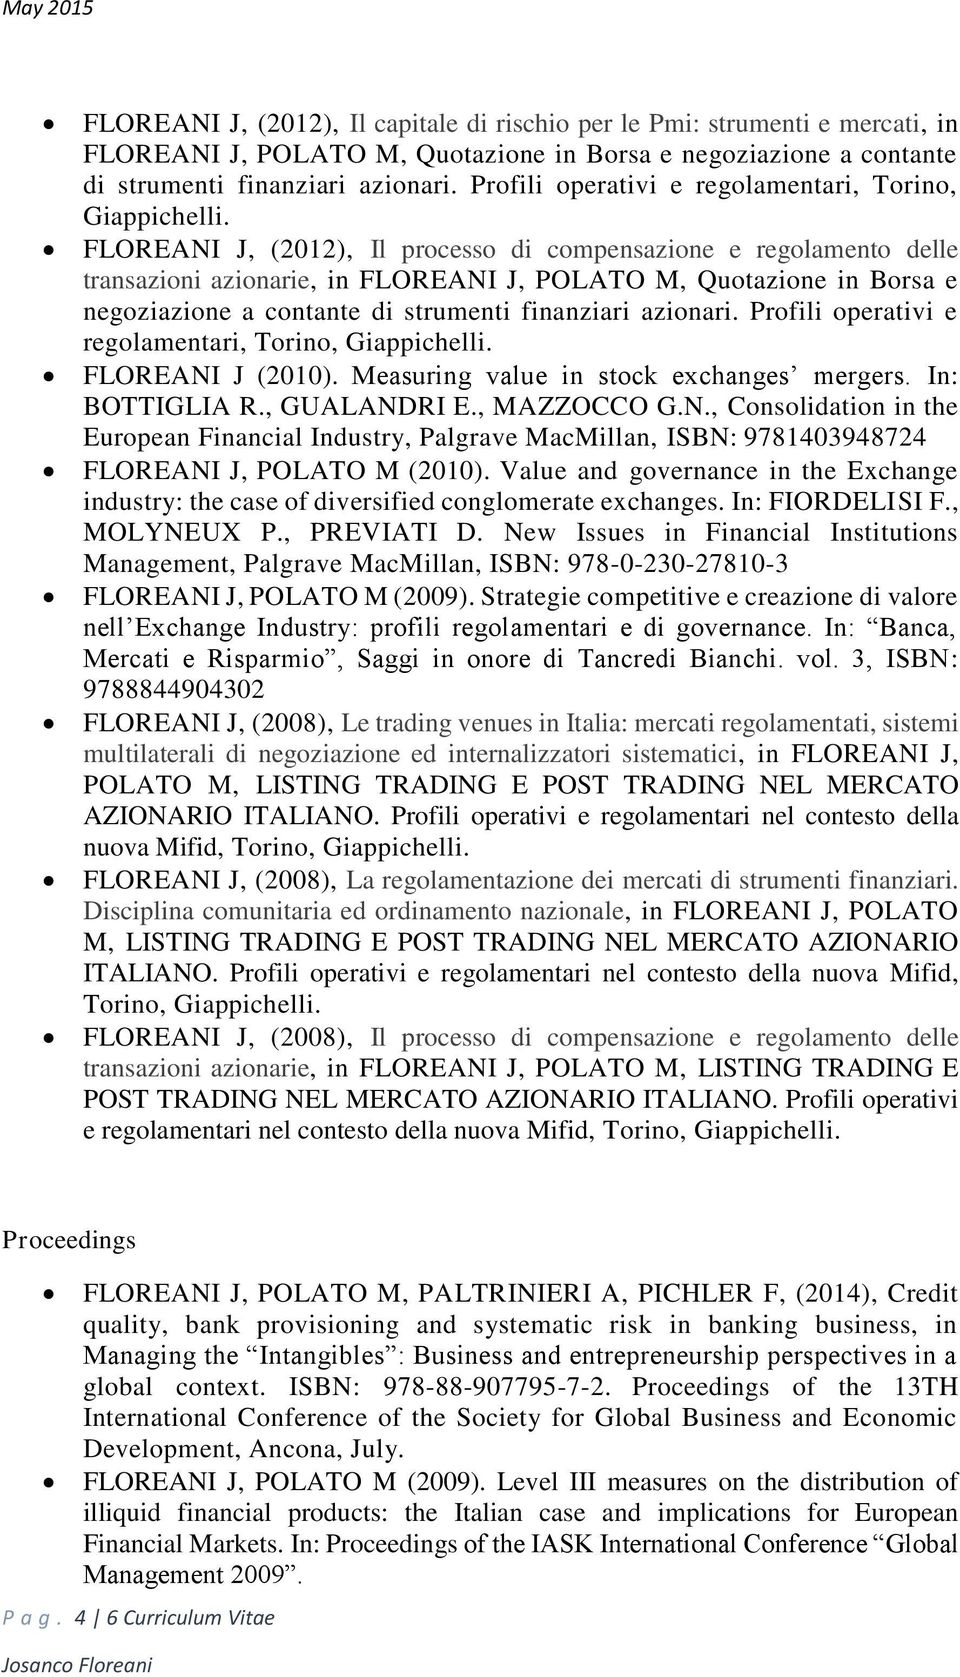 FLOREANI J, (2012), Il processo di compensazione e regolamento delle transazioni azionarie, in FLOREANI J, POLATO M, Quotazione in Borsa e negoziazione a contante di strumenti finanziari azionari.